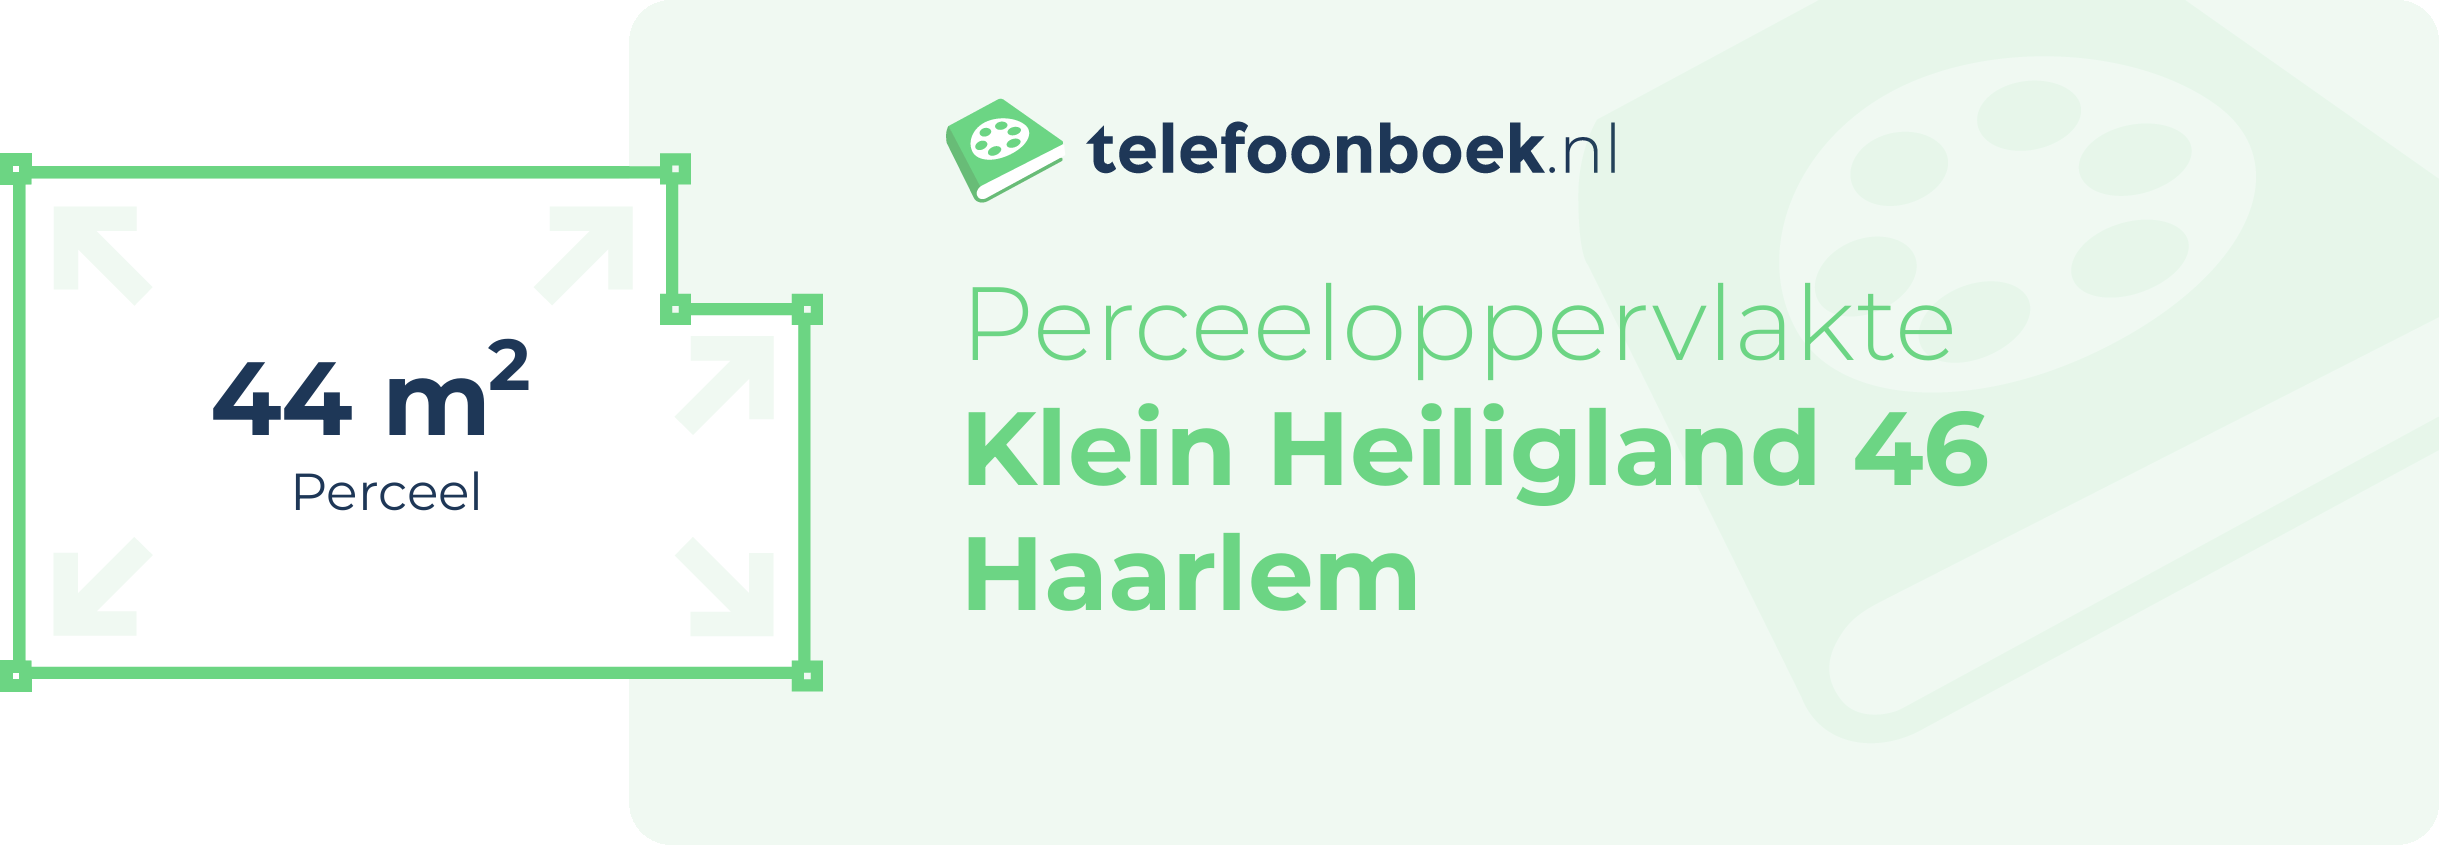 Perceeloppervlakte Klein Heiligland 46 Haarlem